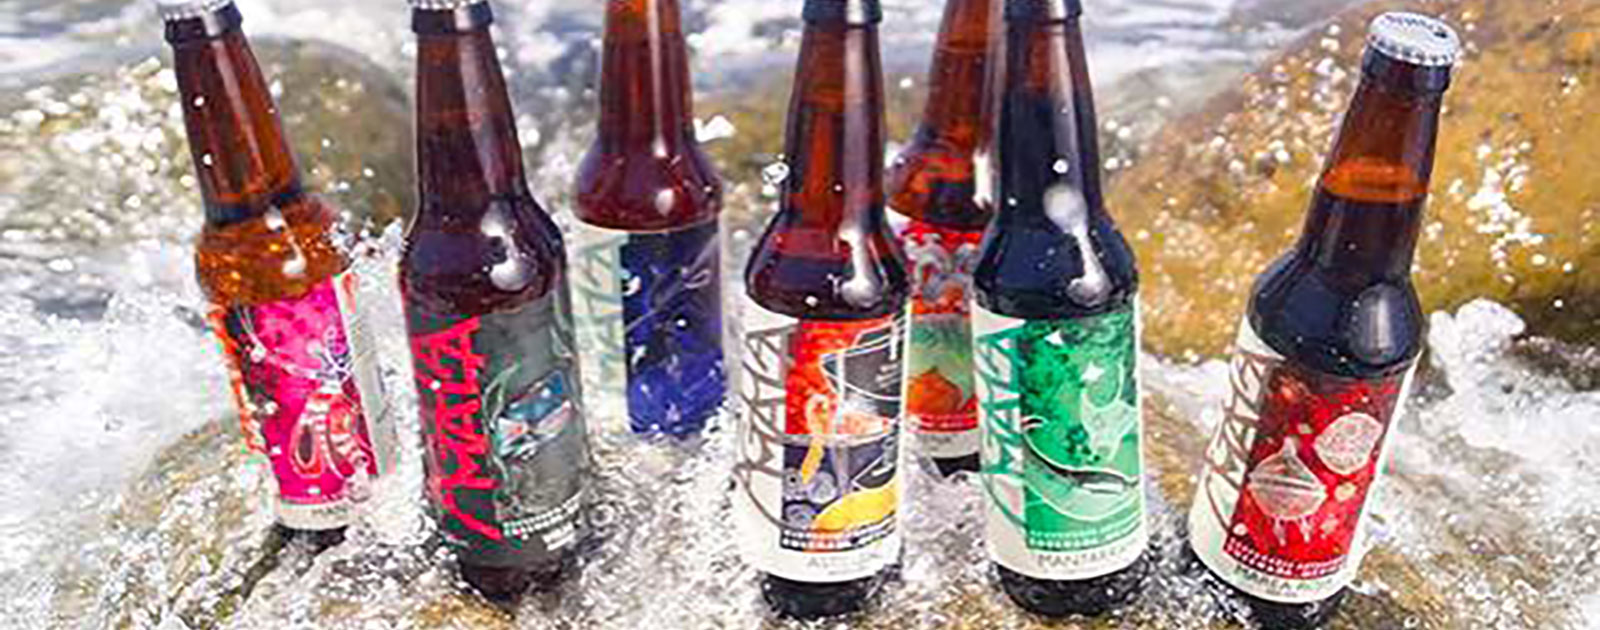 Cerveceria Aguamala Bottle Line Up